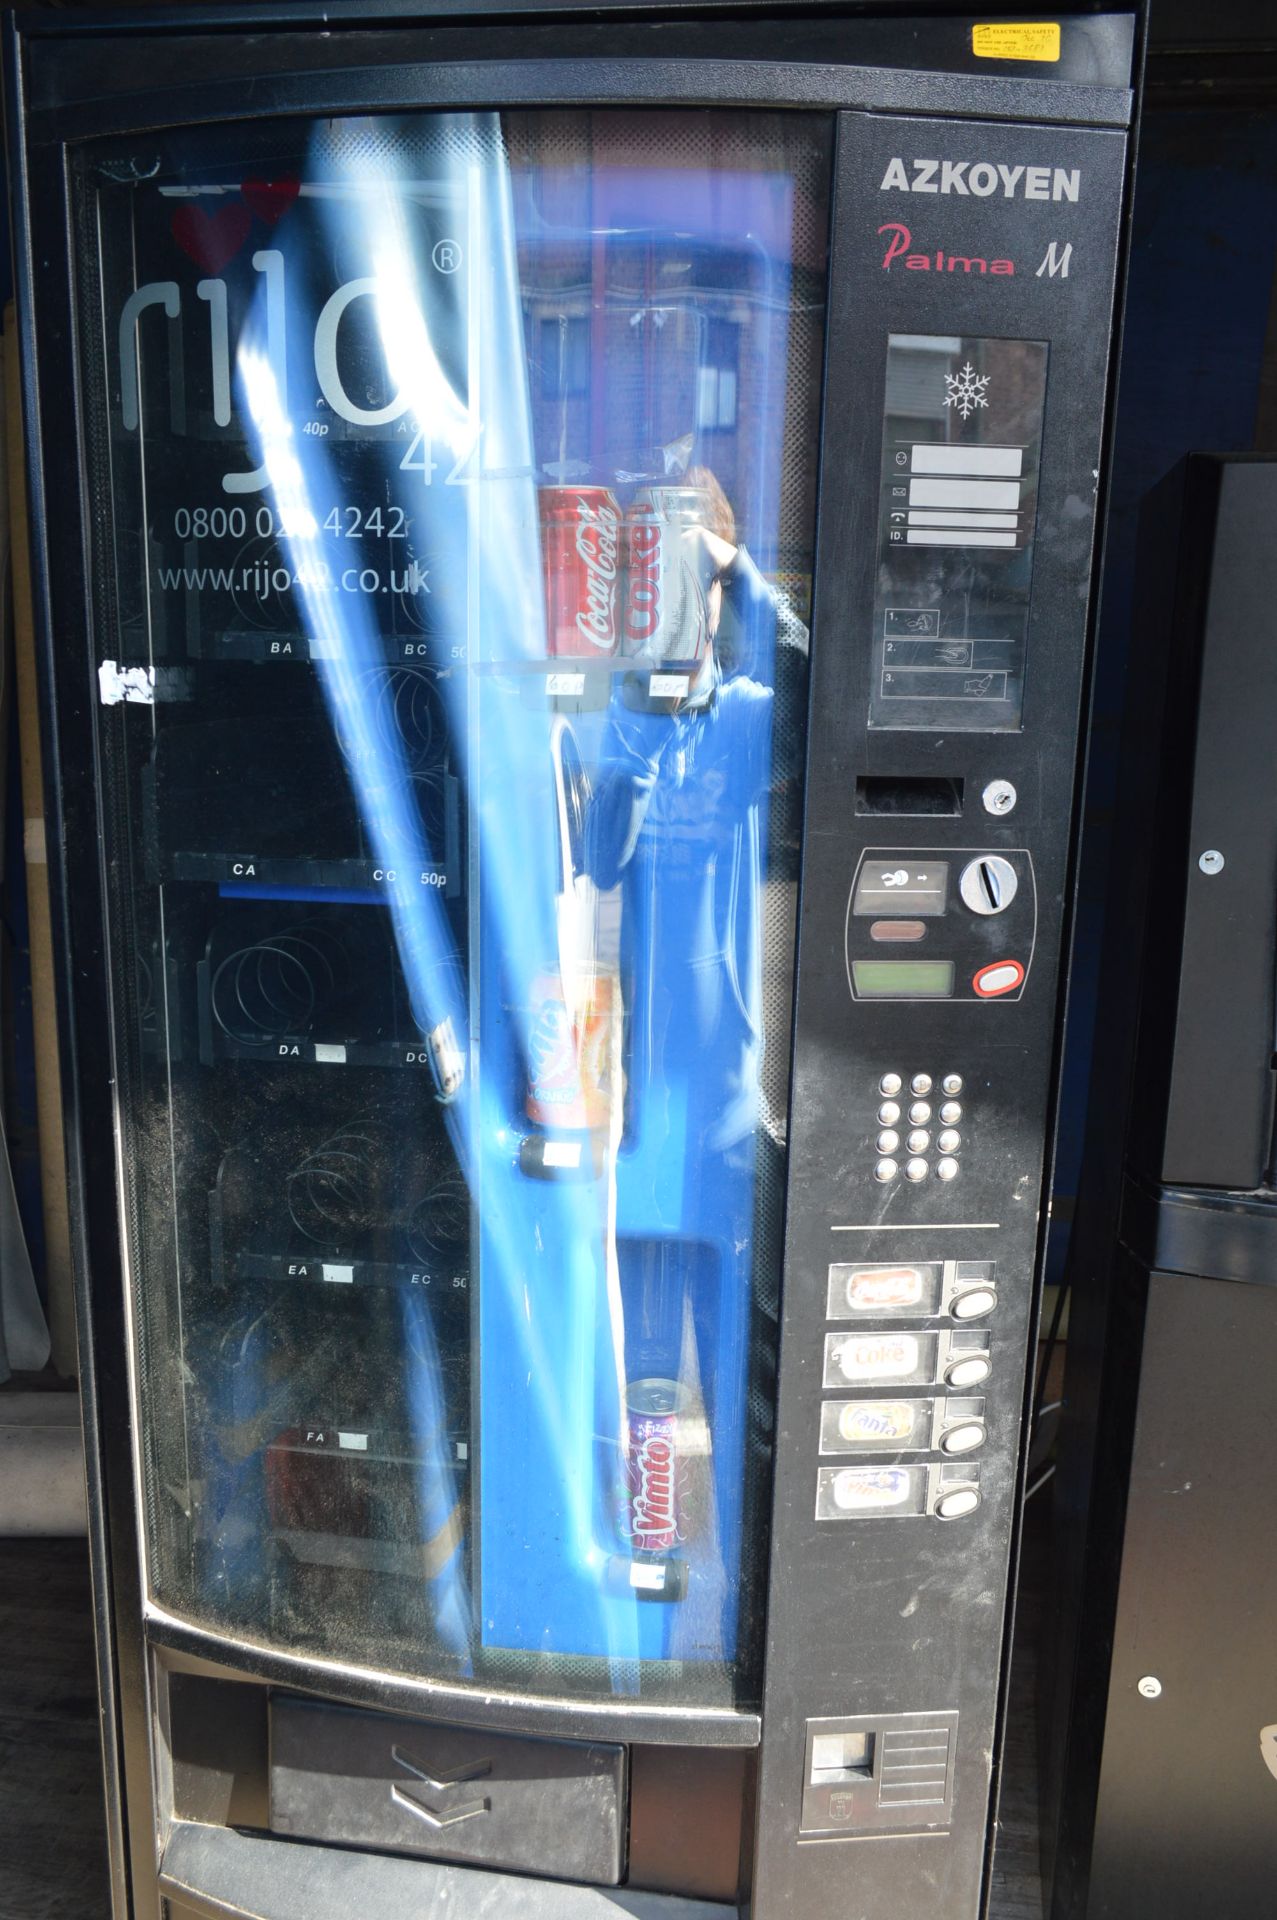 Grupo Azkoyen Palma M Canned Drink Vending Machine - Image 2 of 2